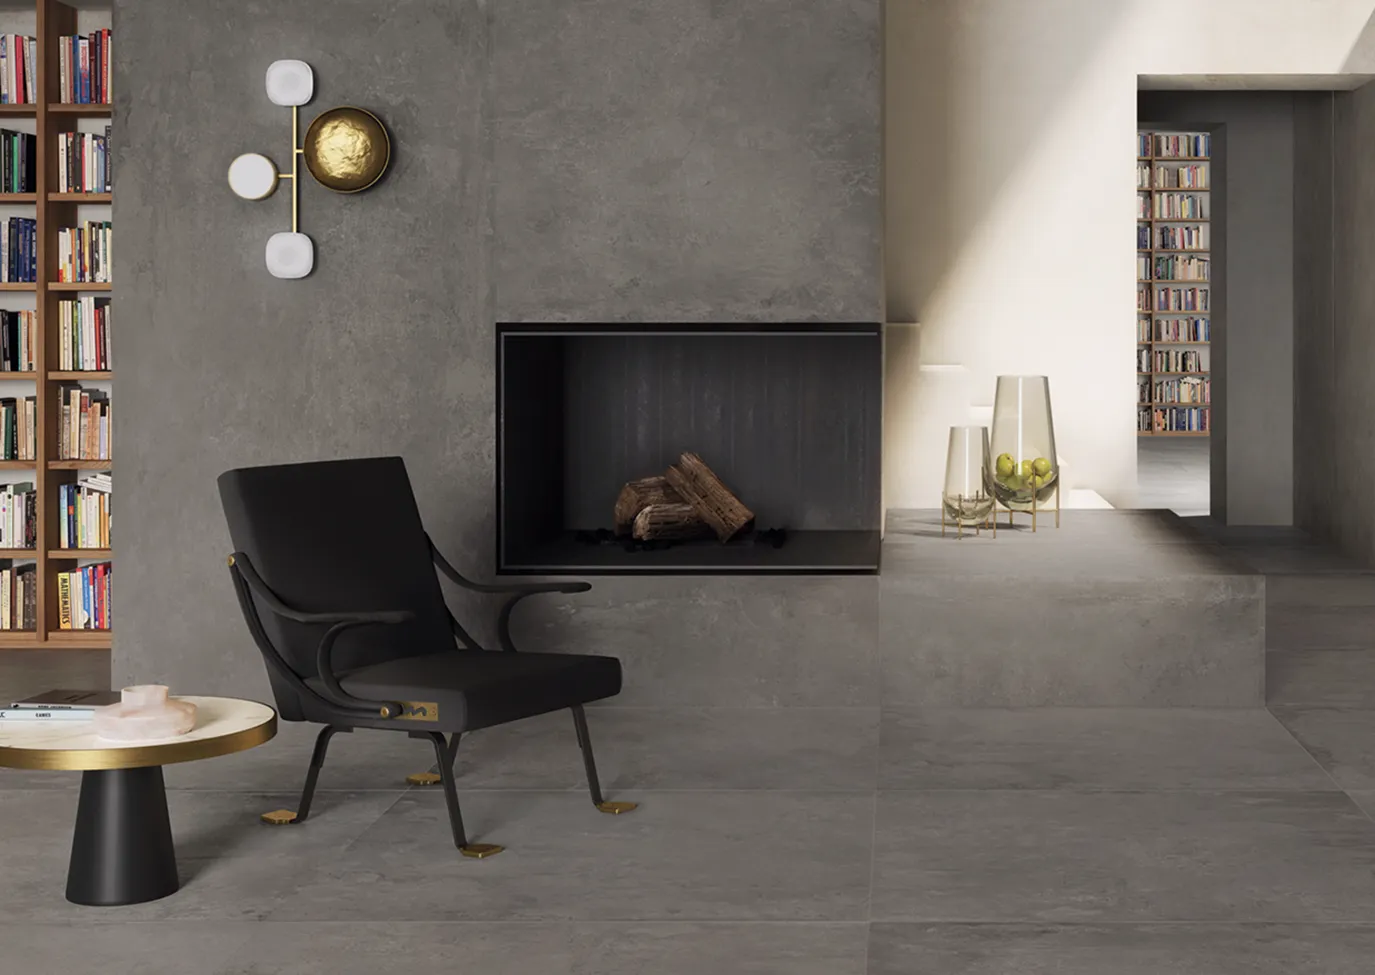 Pavimenti e parete rivestiti con piastrelle in gres porcellanato effetto cemento grigio scuro della collezione Ikon in un soggiorno moderno con camino e libreria.